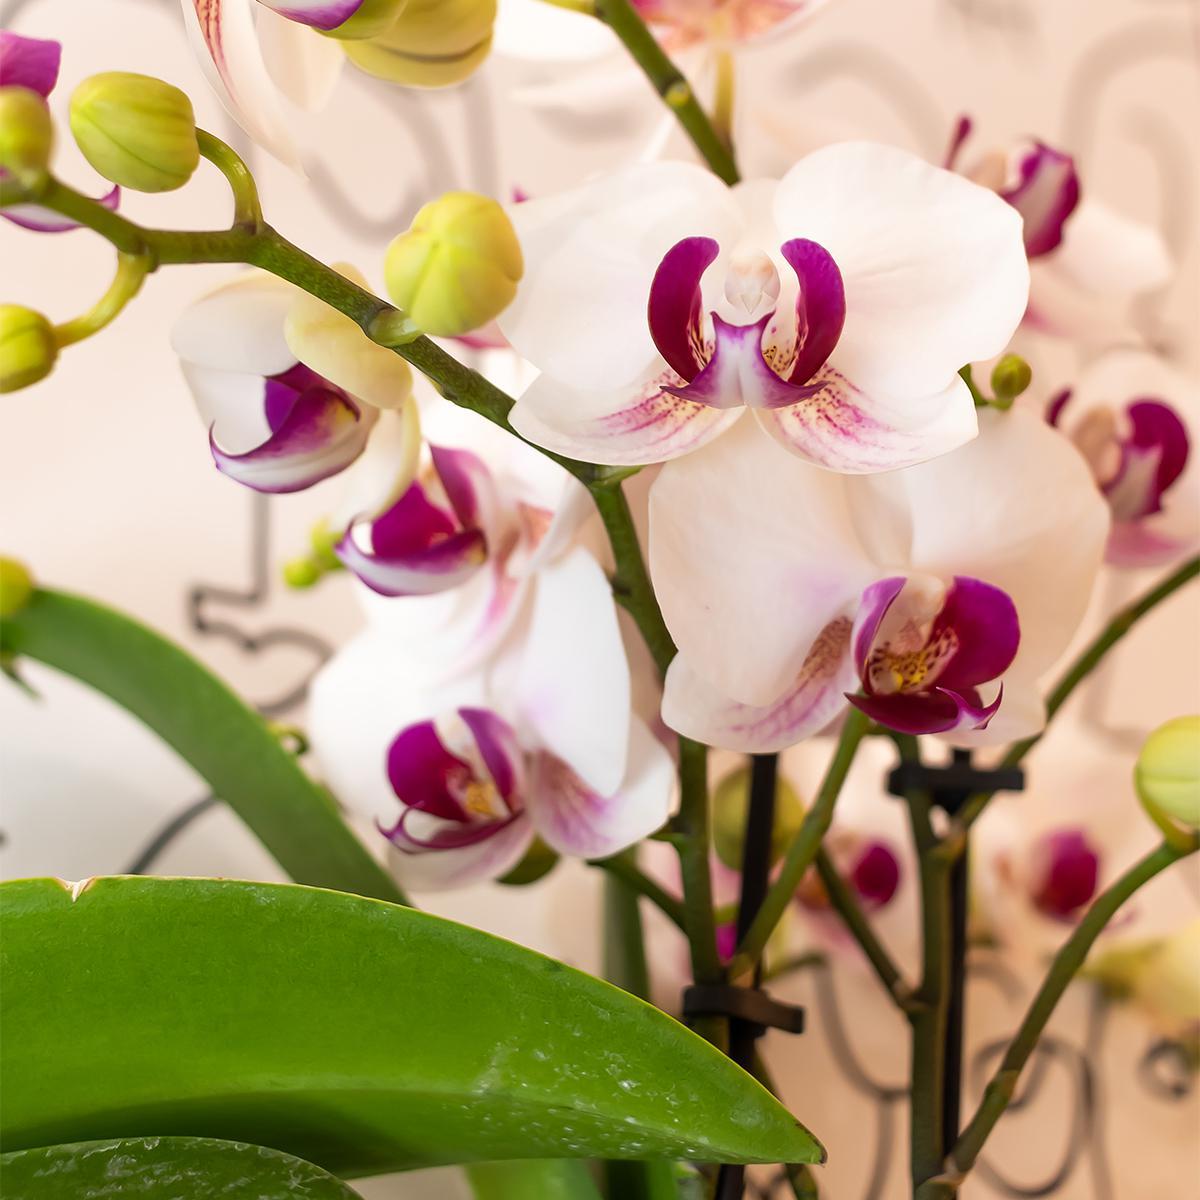 Kolibri Orchids | Witte Phalaenopsis orchidee - Mineral Gibraltar -  potmaat Ø9cm | bloeiende kamerplant - vers van de kweker